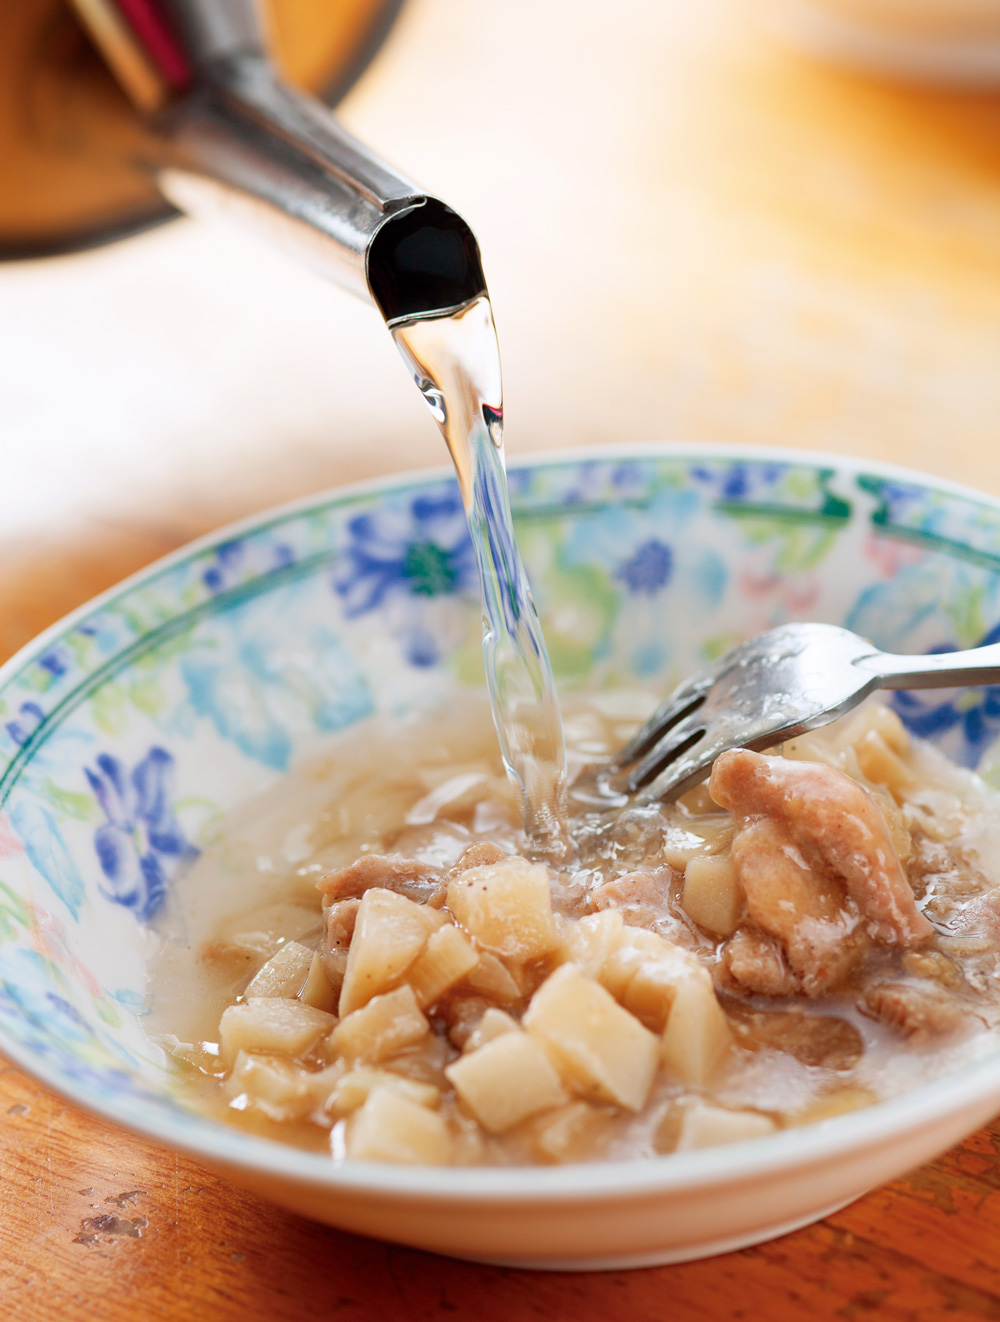 埔里人習慣把內餡跟醬料留在碗裡，再沖入大骨高湯吃。（攝影：王文廷）